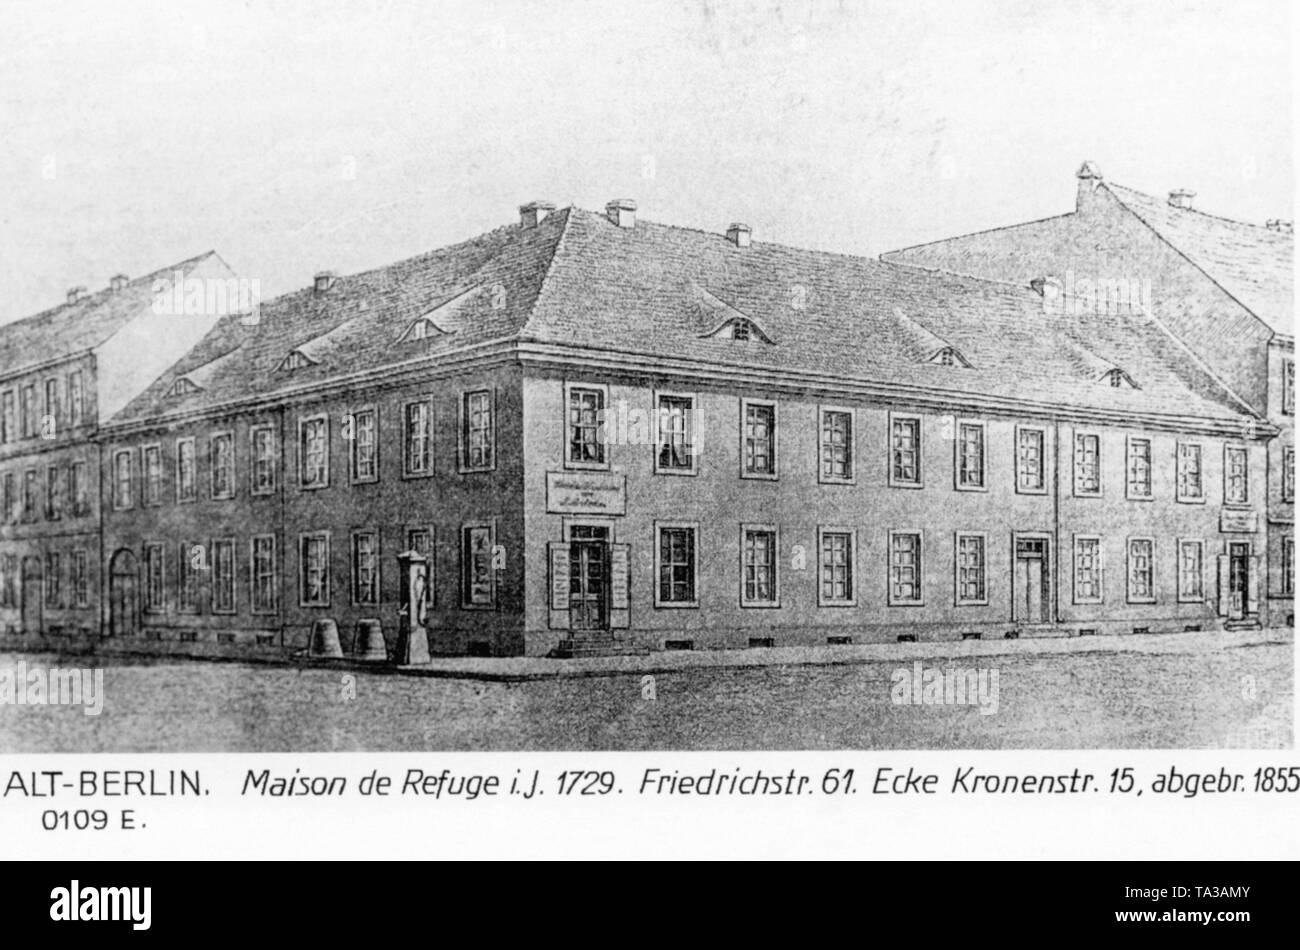 La Maison de rifugio nella Friedrichstrasse / angolo Kronenestrasse a Berlino. Esso bruciata nel 1855. Foto Stock